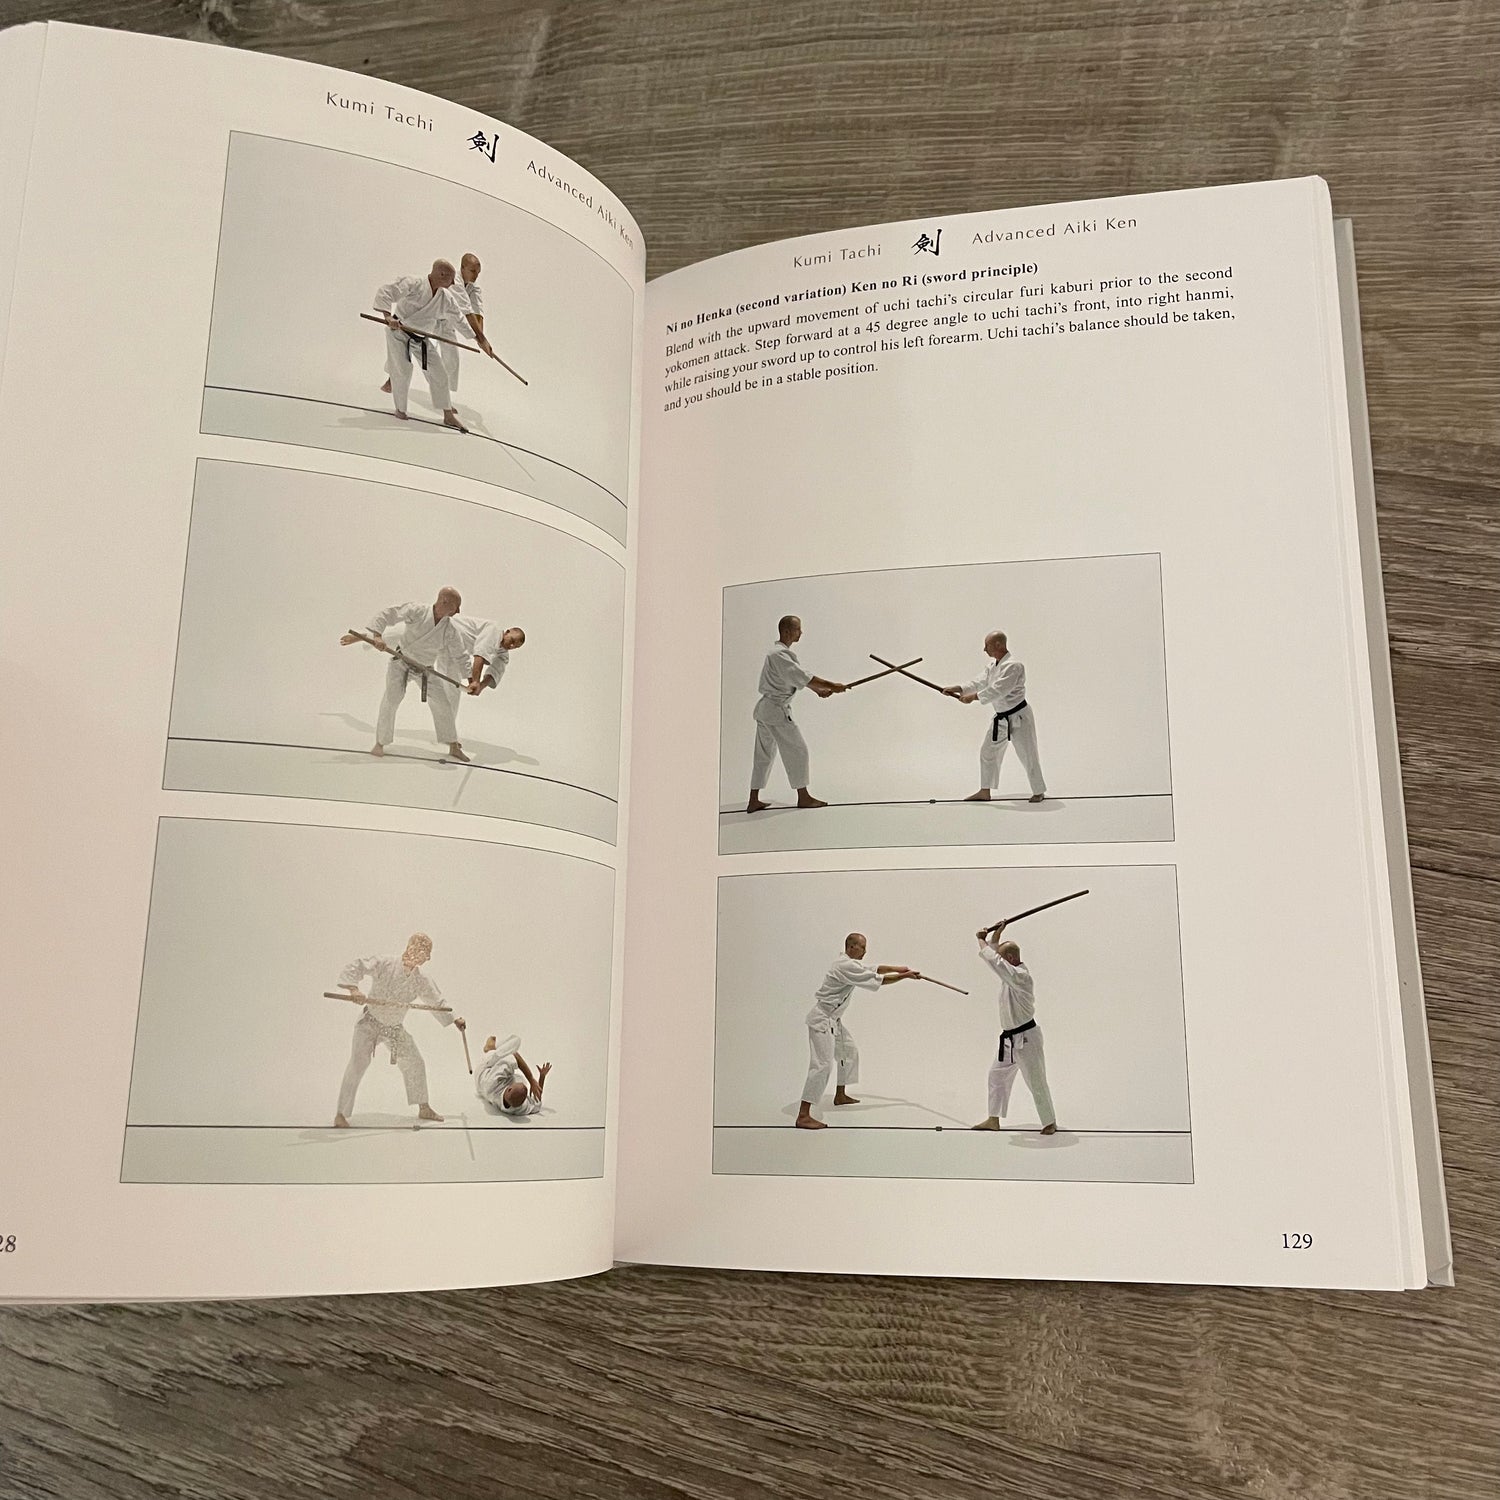 Libro de edición especial Bukiwaza Basic & Advanced Aiki Ken & Aiki Jo de Ethan Weisgard (tapa dura)